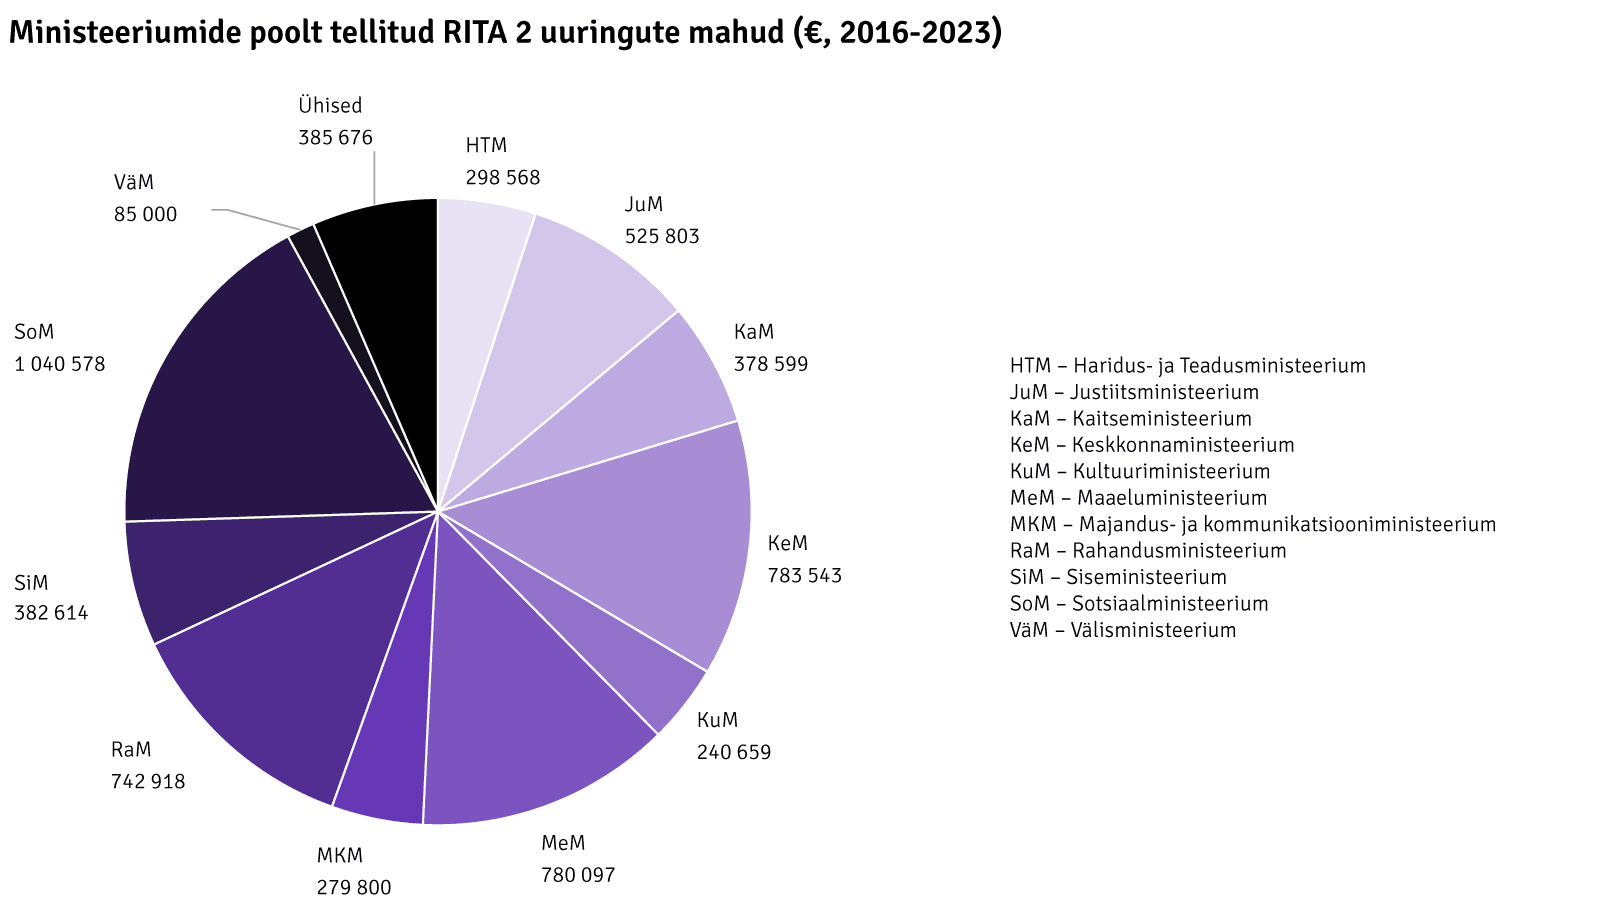 Ministeeriumide poolt tellitud RITA 2 uuringute mahud (eur)